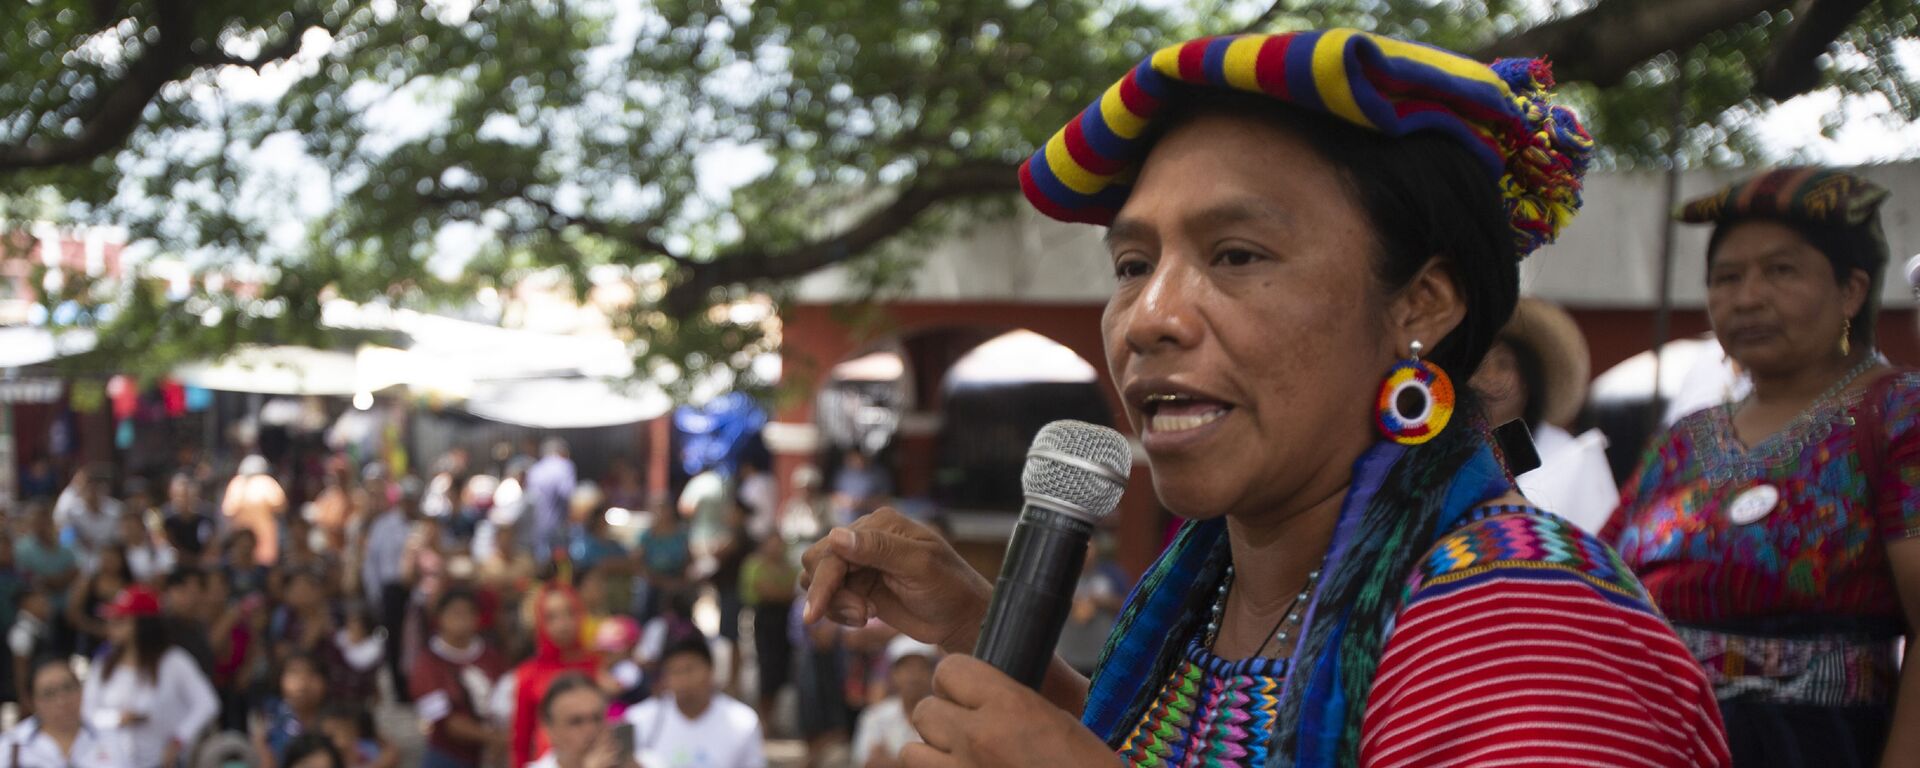 Thelma Cabrera, dirigente del pueblo maya mam - Sputnik Mundo, 1920, 18.02.2021